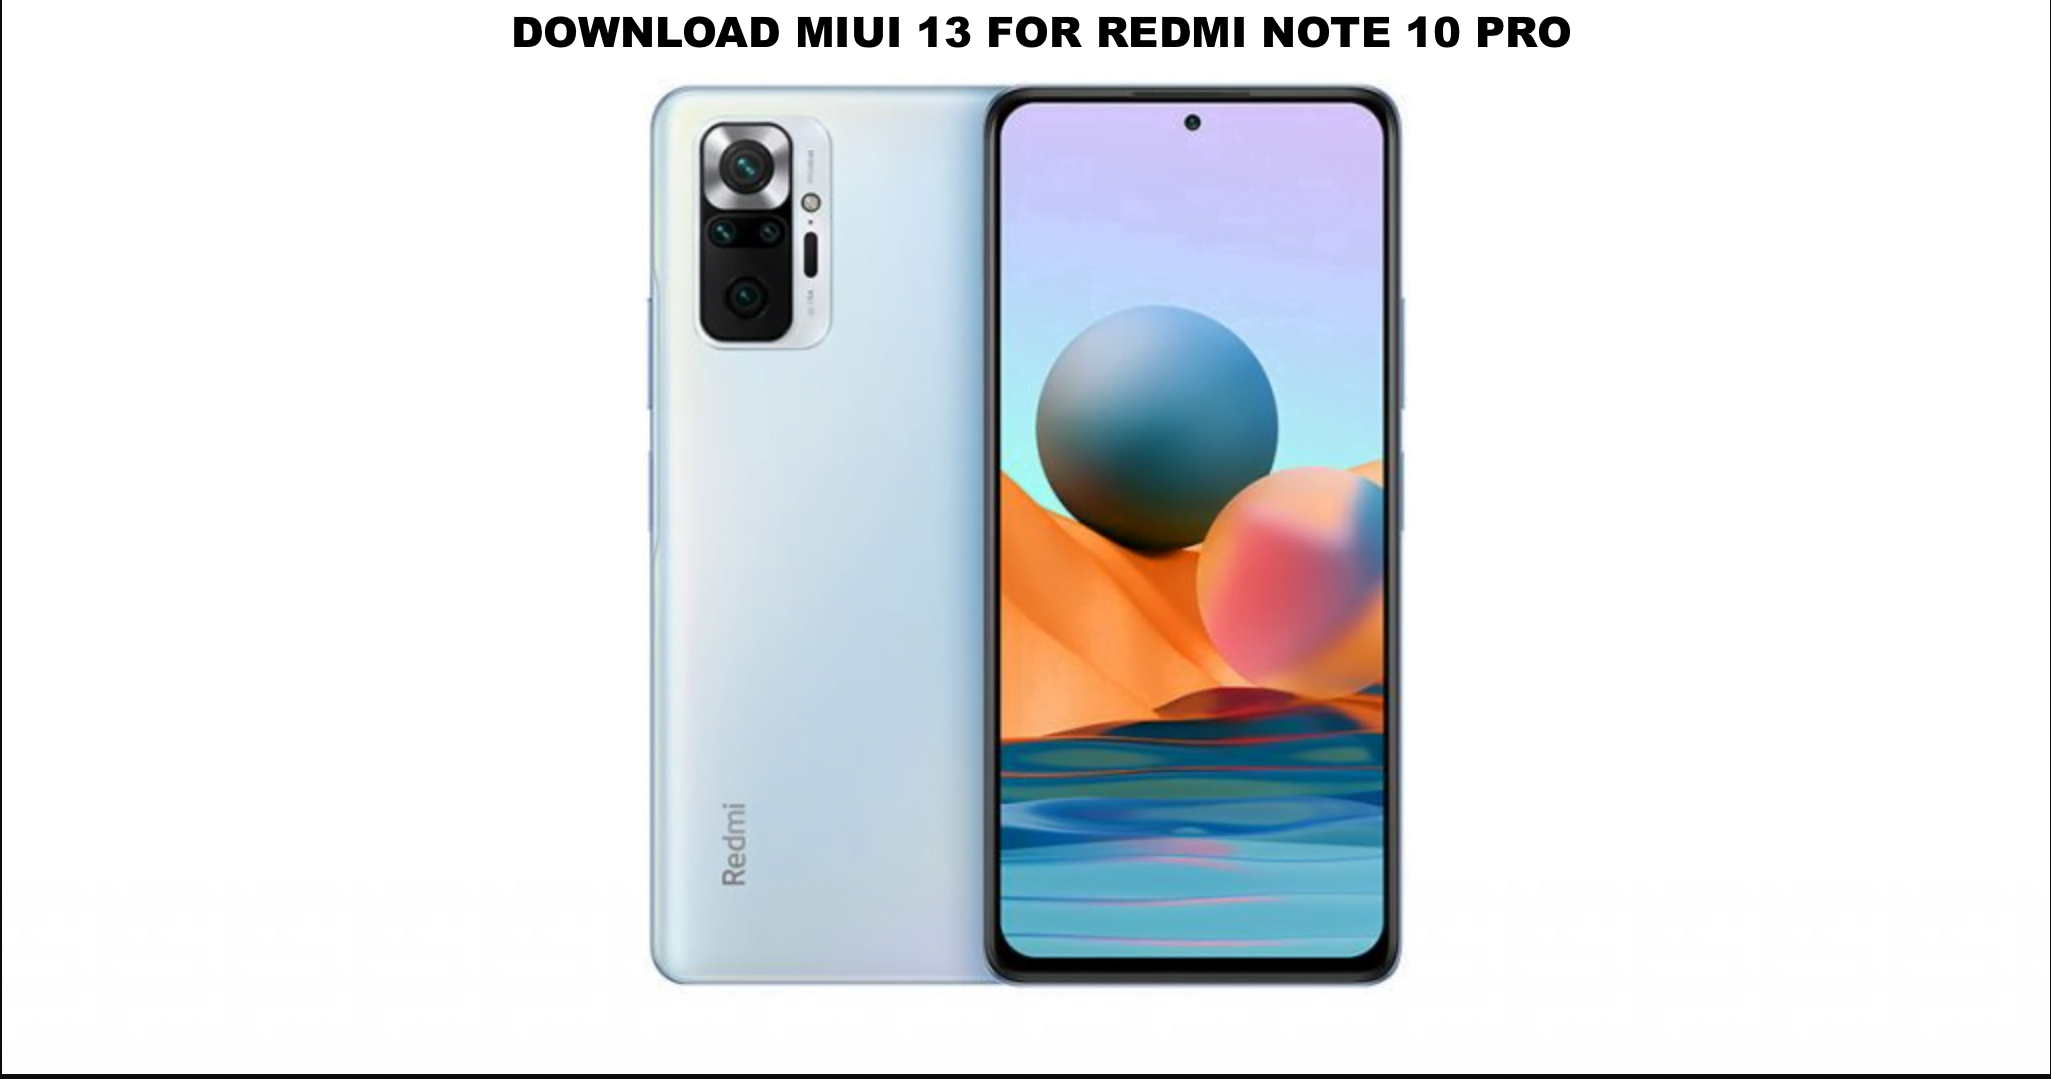 Download Miui 13 for Redmi Note 10 Pro